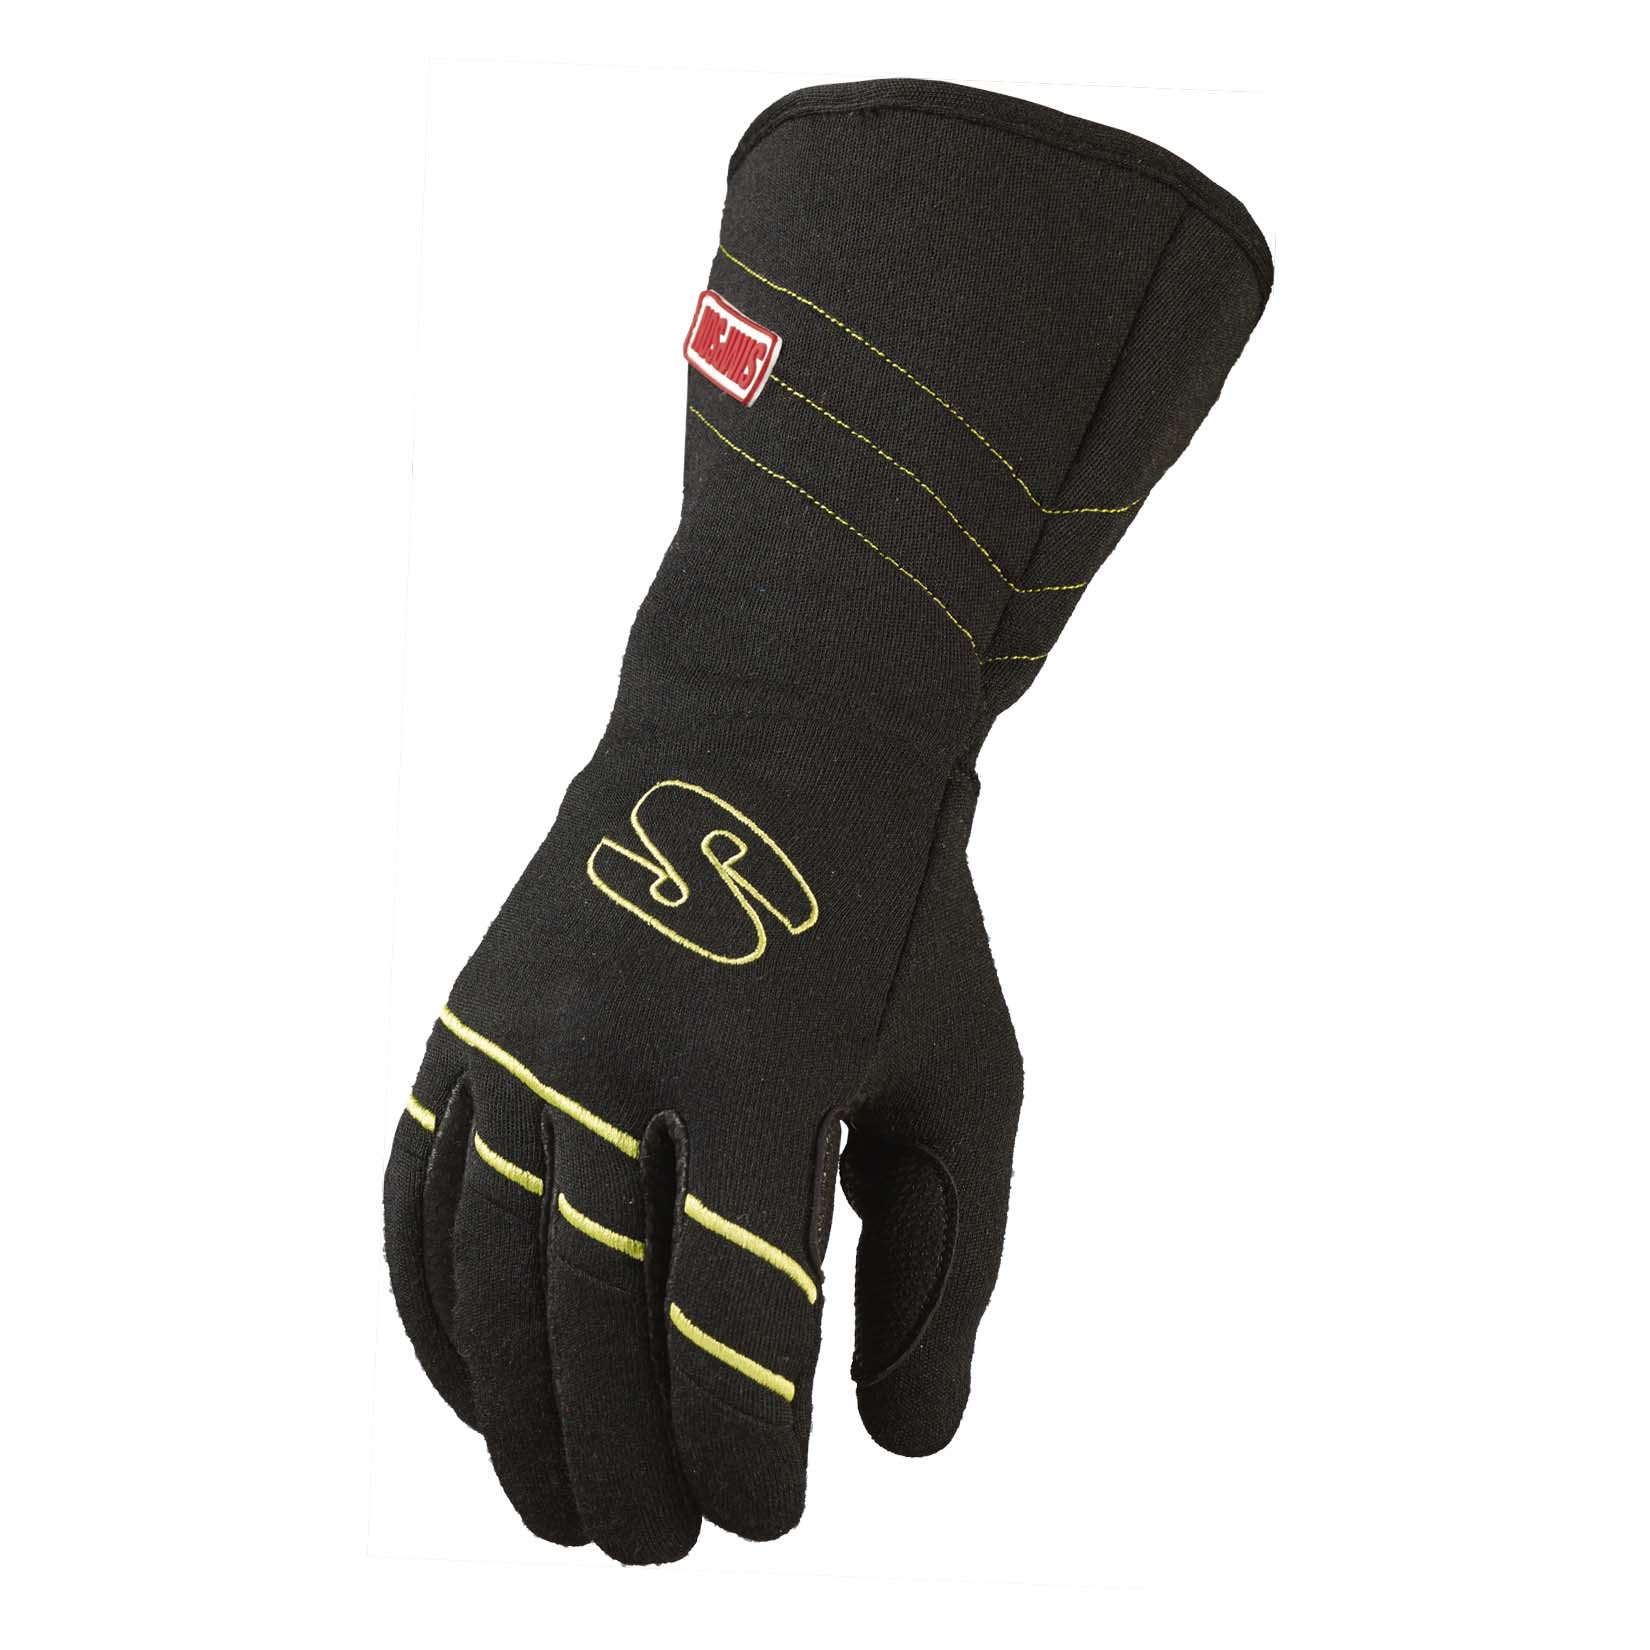 Simpson Hi-Vis Racing Gloves